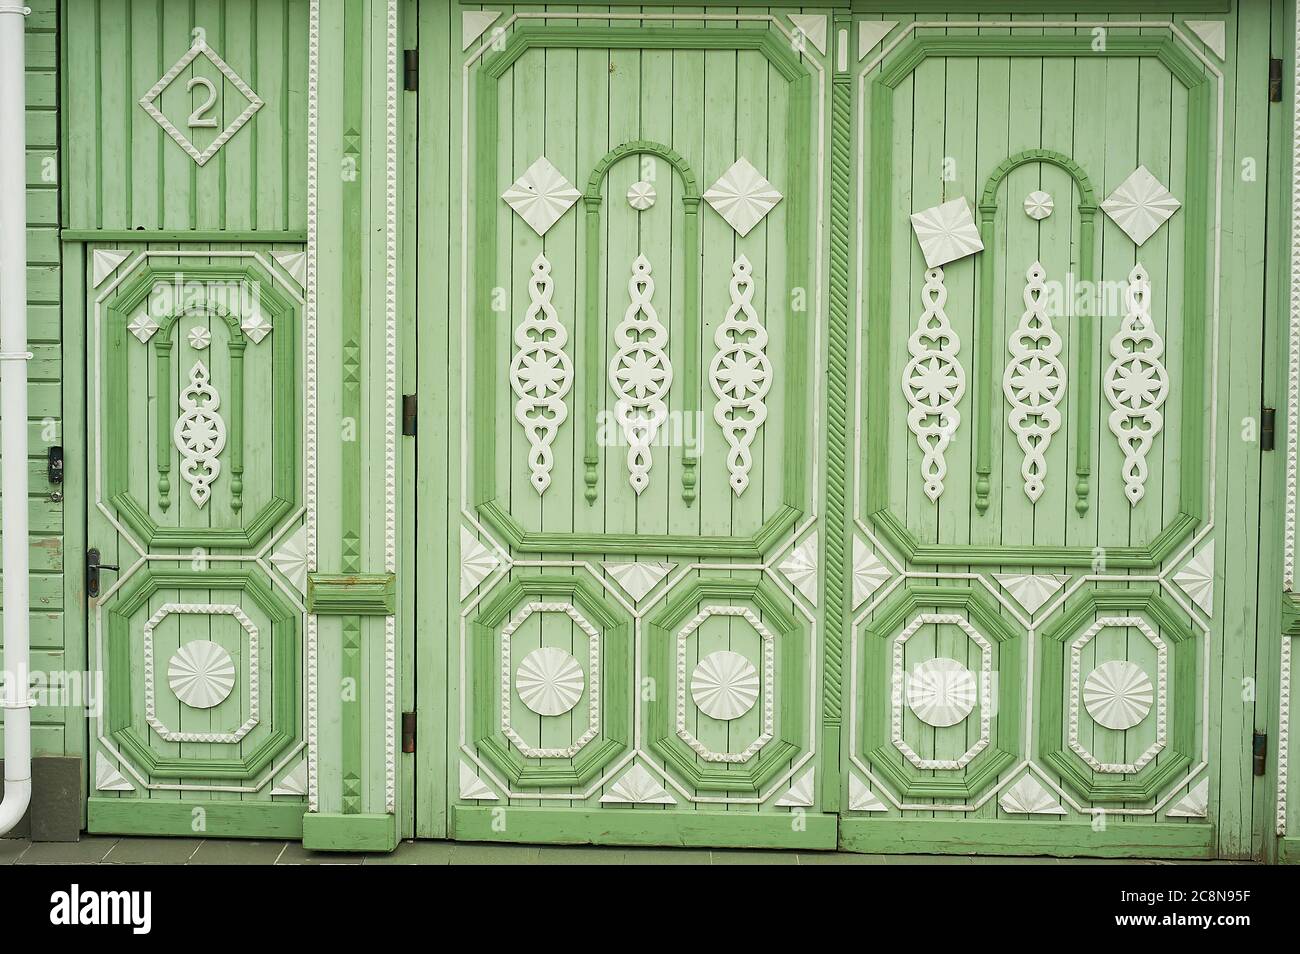 Hölzerne breite Tore in alten russischen Häusern. Figurative Ornamente aus Holz.Helle Farben. Alte russische Holzhäuser. Stockfoto